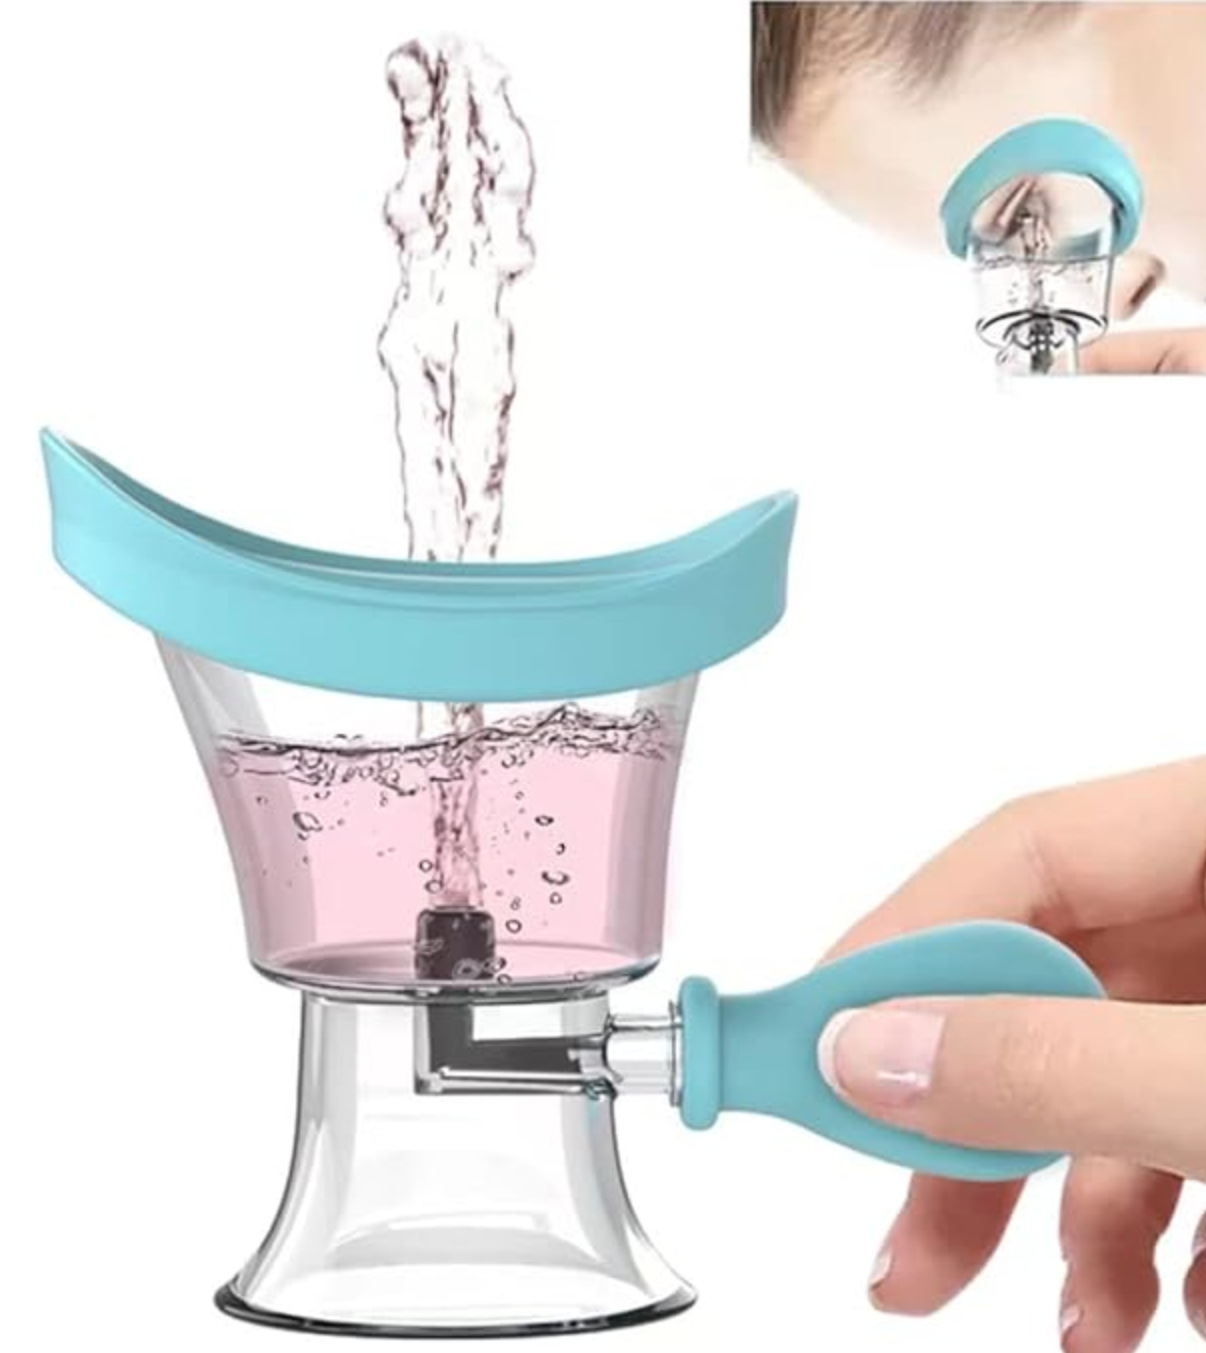 Portable squeeze eyewash cup